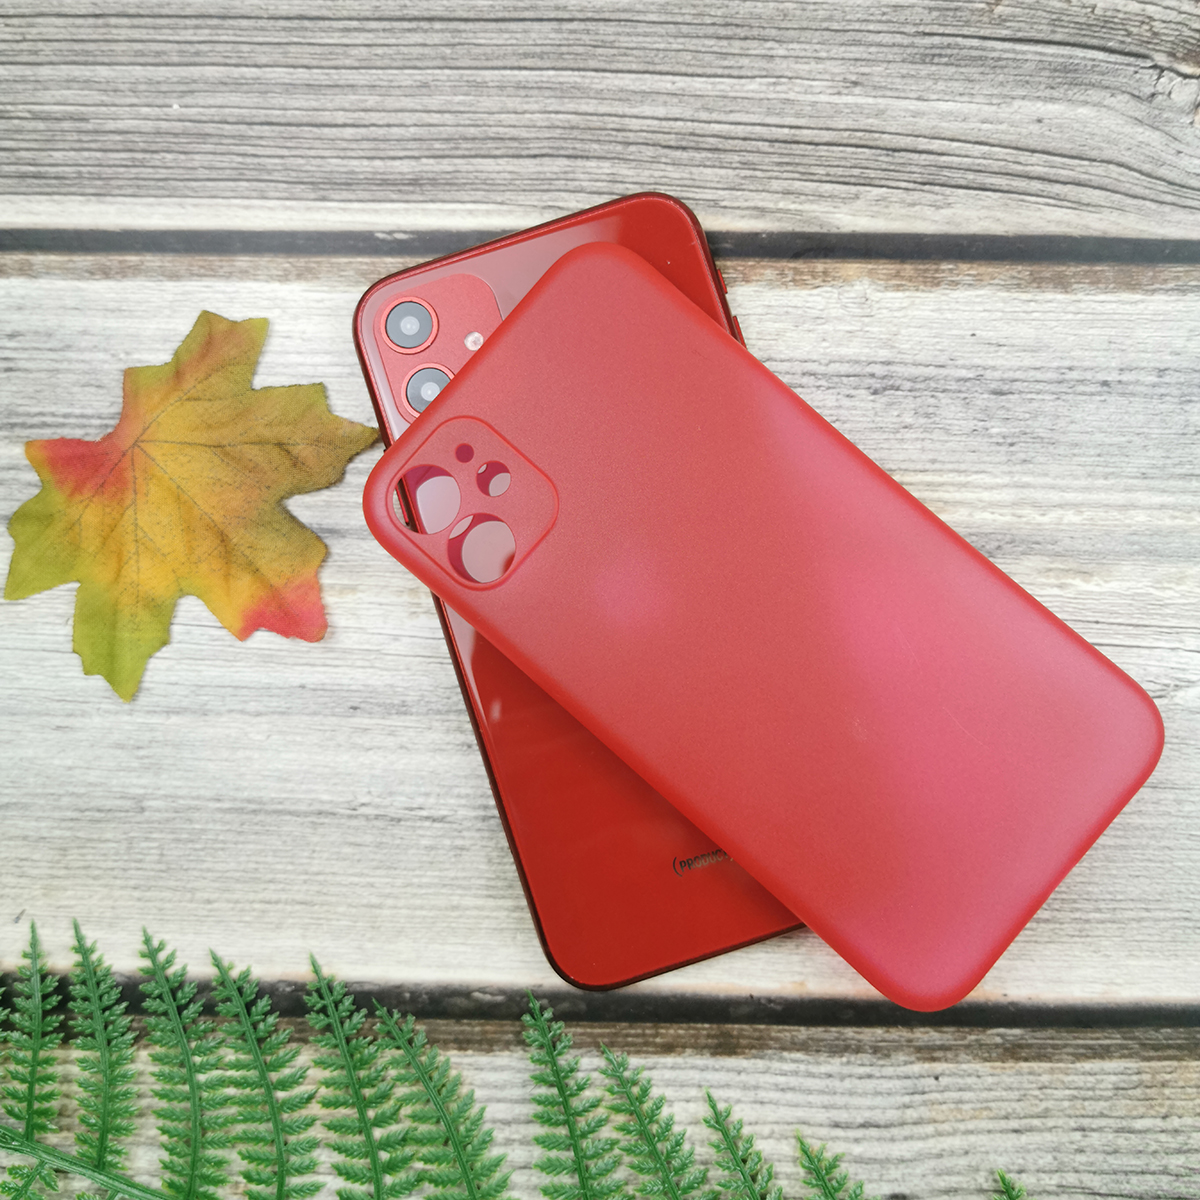 313100 รุ่น iPhone XS สีแดง กึ่งโปร่ง
